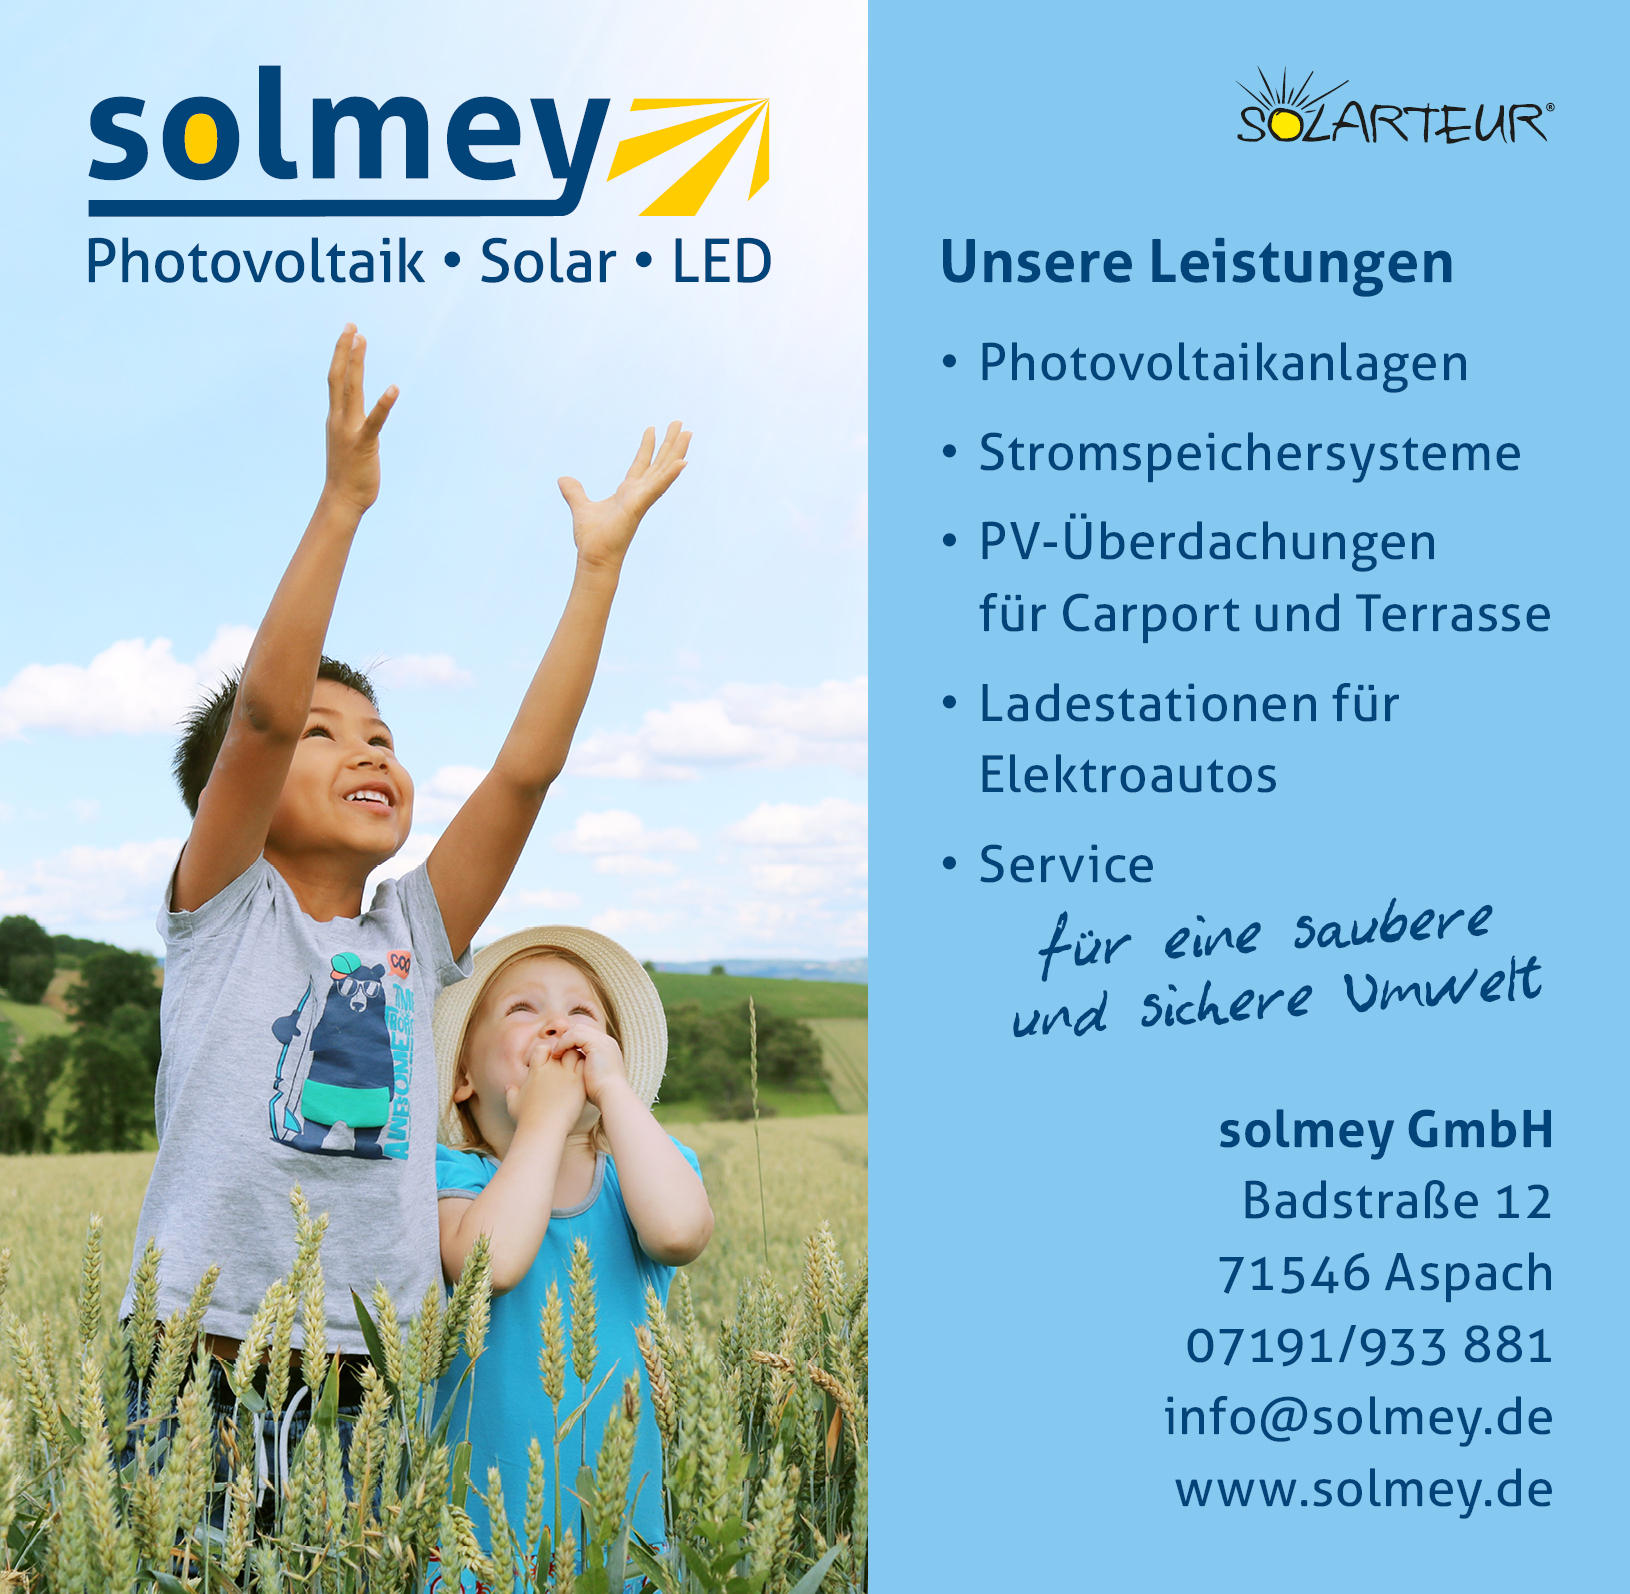 Bilder solmey GmbH